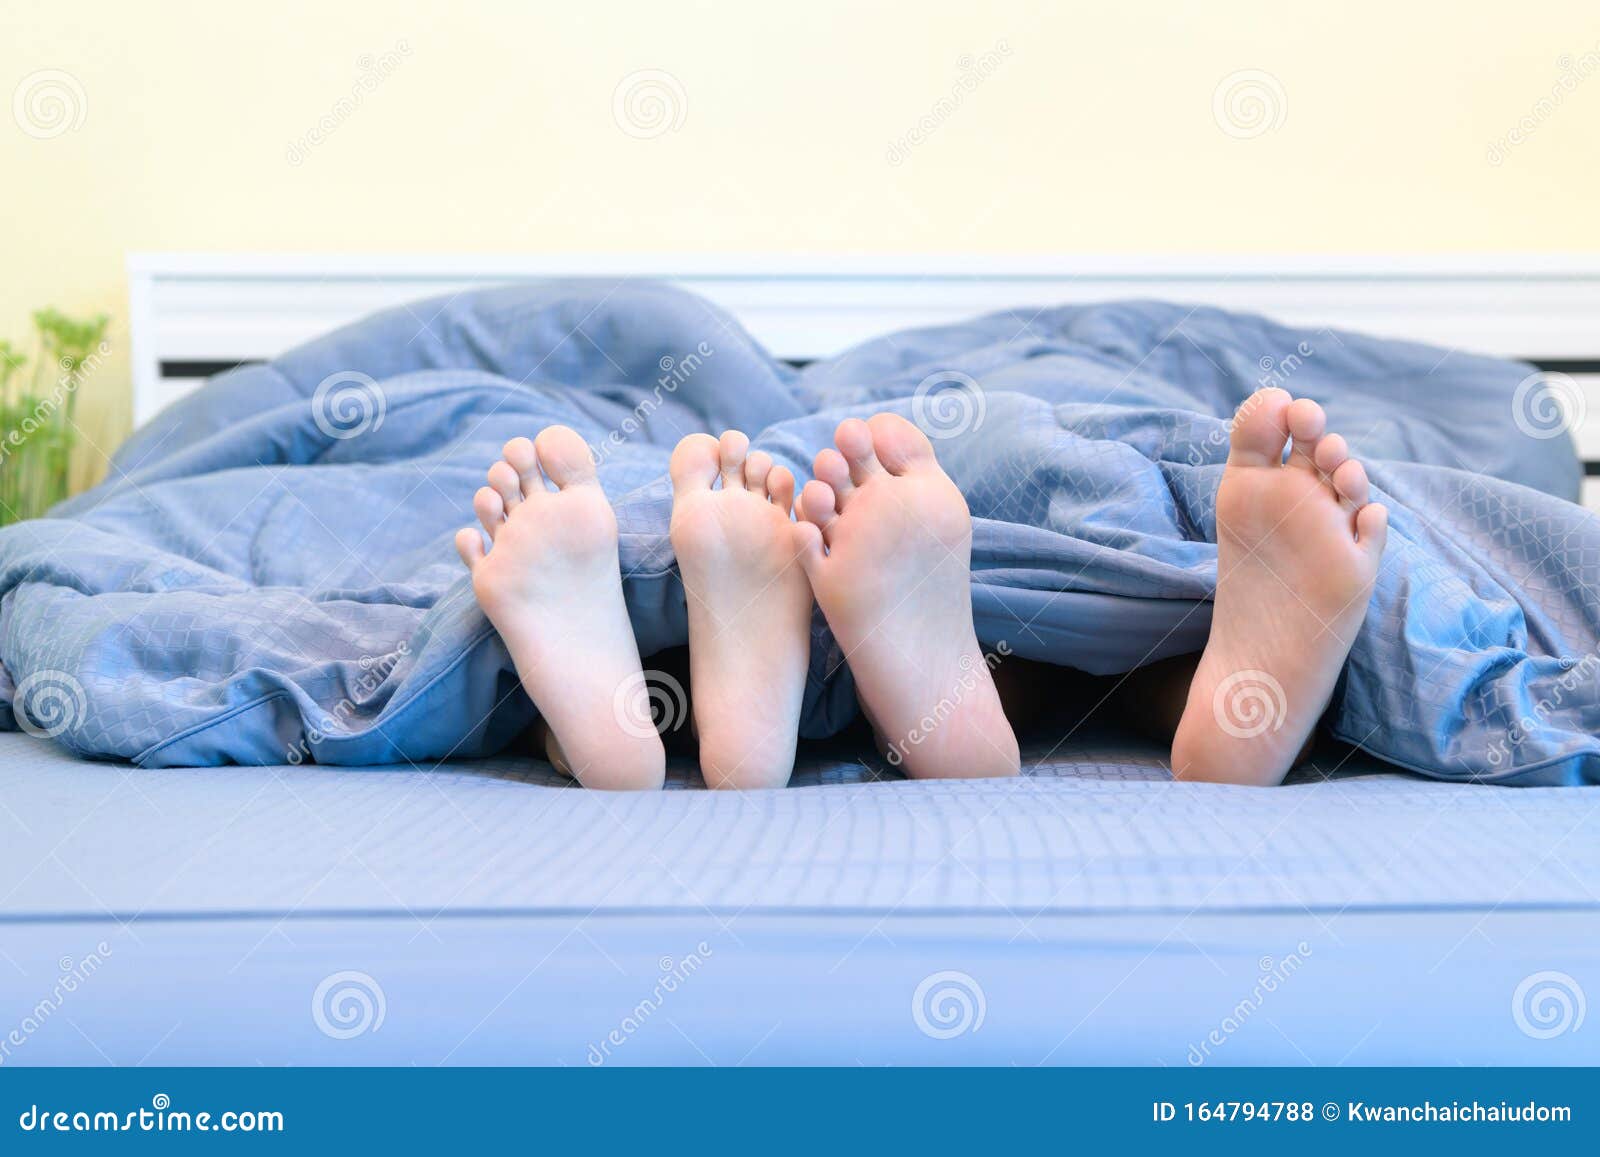 Под одеялом сестренкой. Пятки девочек на кровати. Ноги под одеялом. Пятки мальчиков. Пятки из под одеяла.